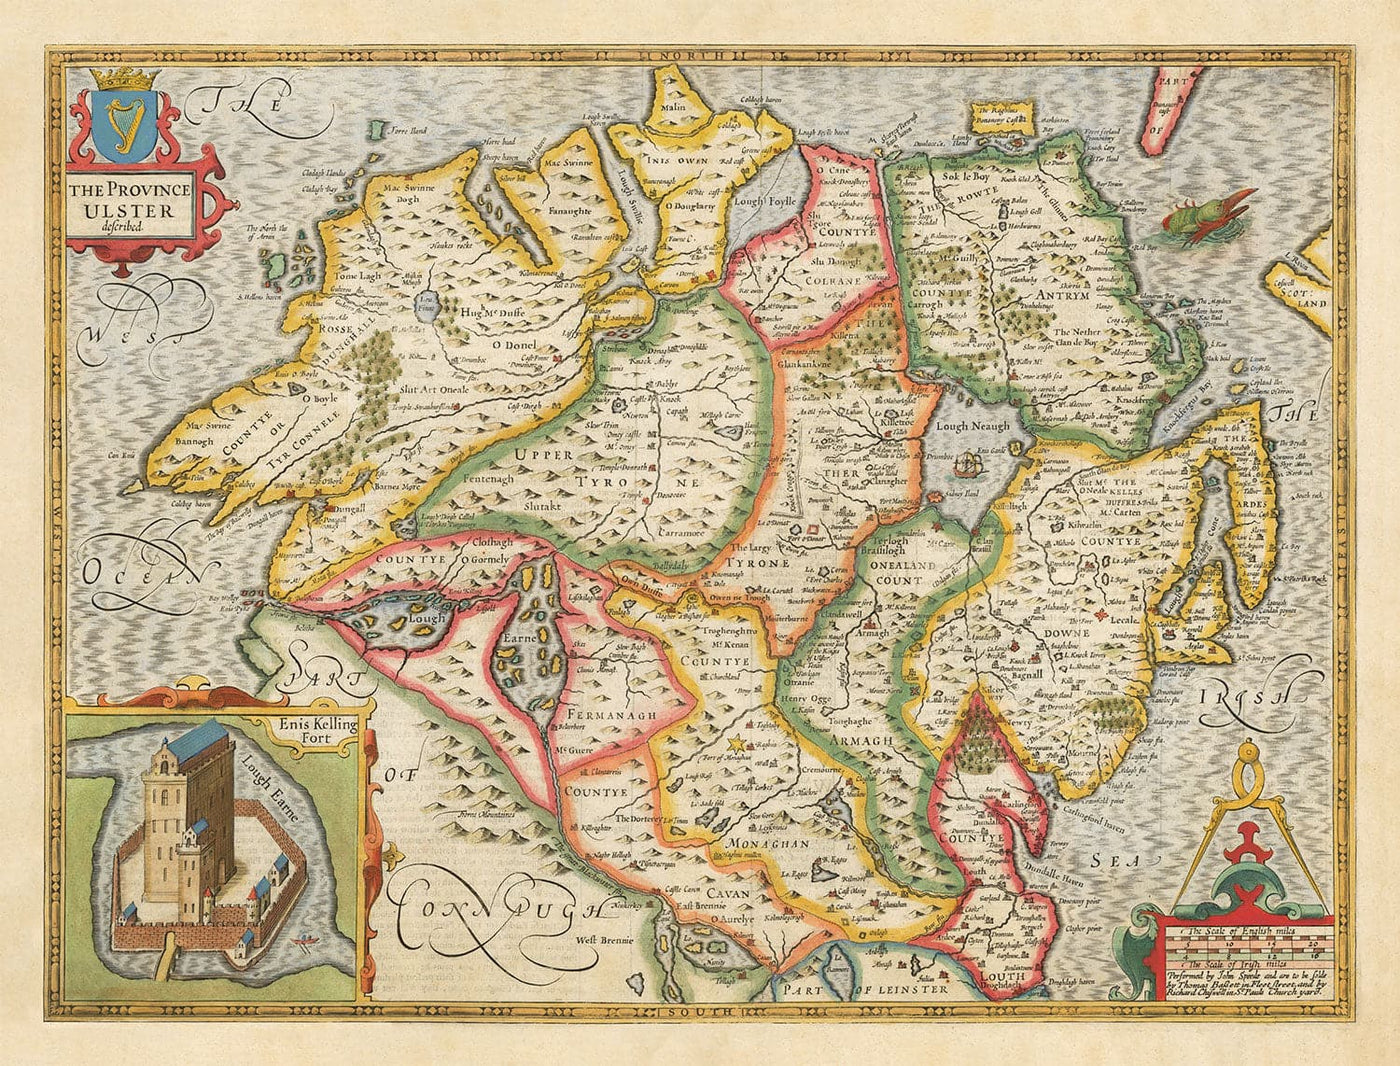 Mapa antiguo de Ulster, Irlanda del Norte en 1611 por John Speed ​​- Belfast, Derry, Condado Antriment & Down